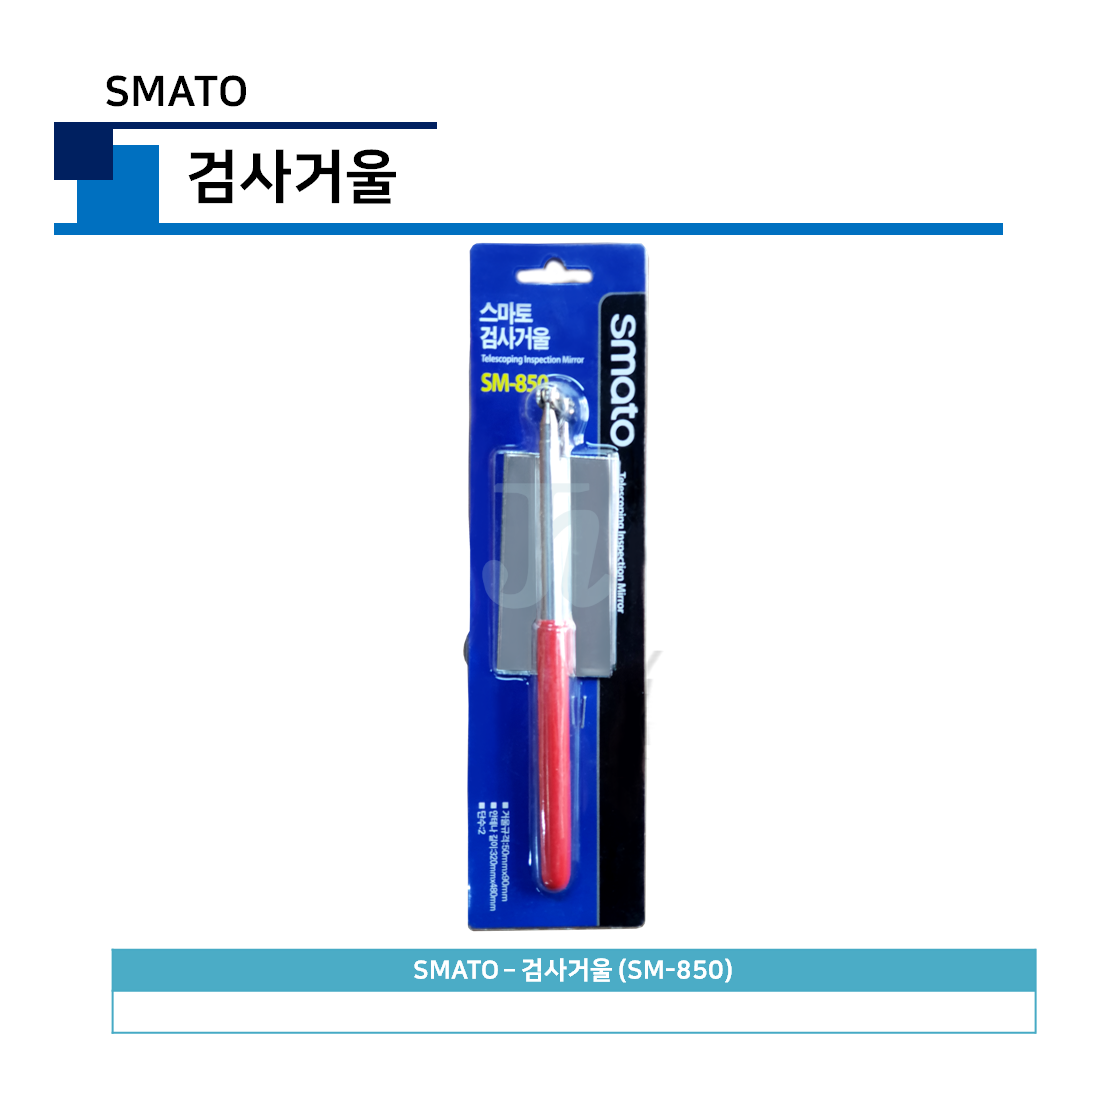 스마토 - 검사거울 SM-850 (SMATO)